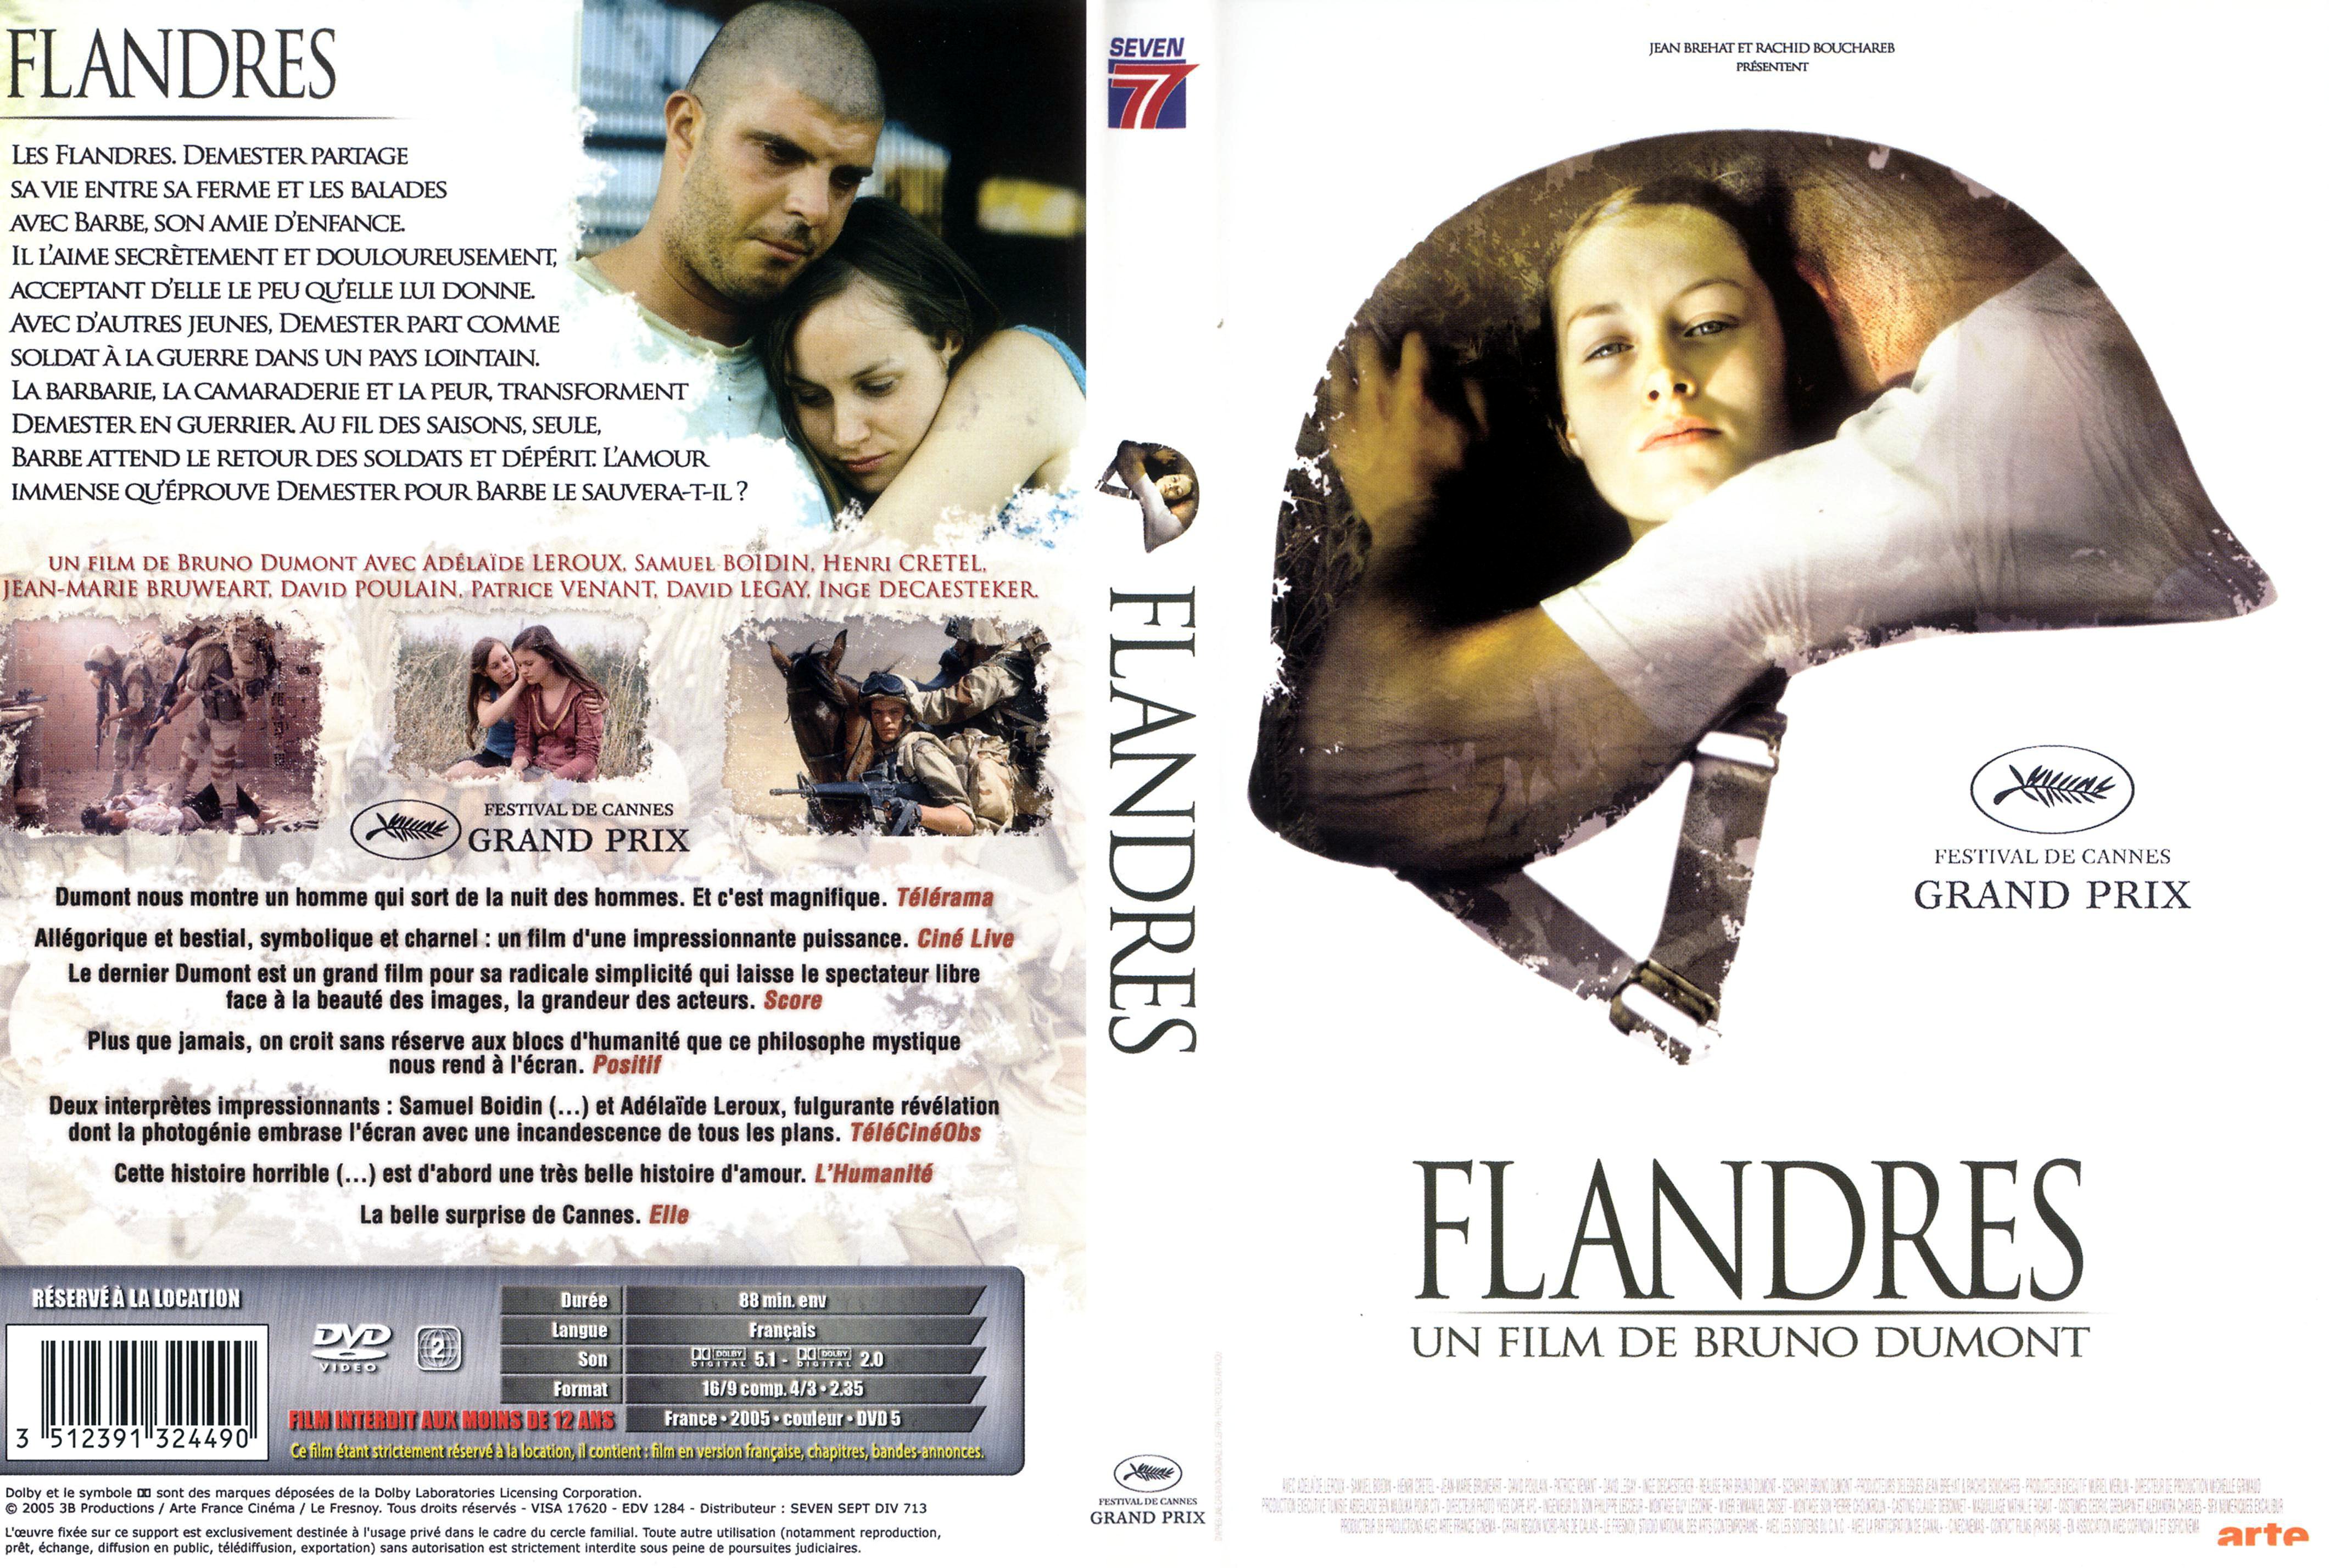 Jaquette DVD Flandres v2